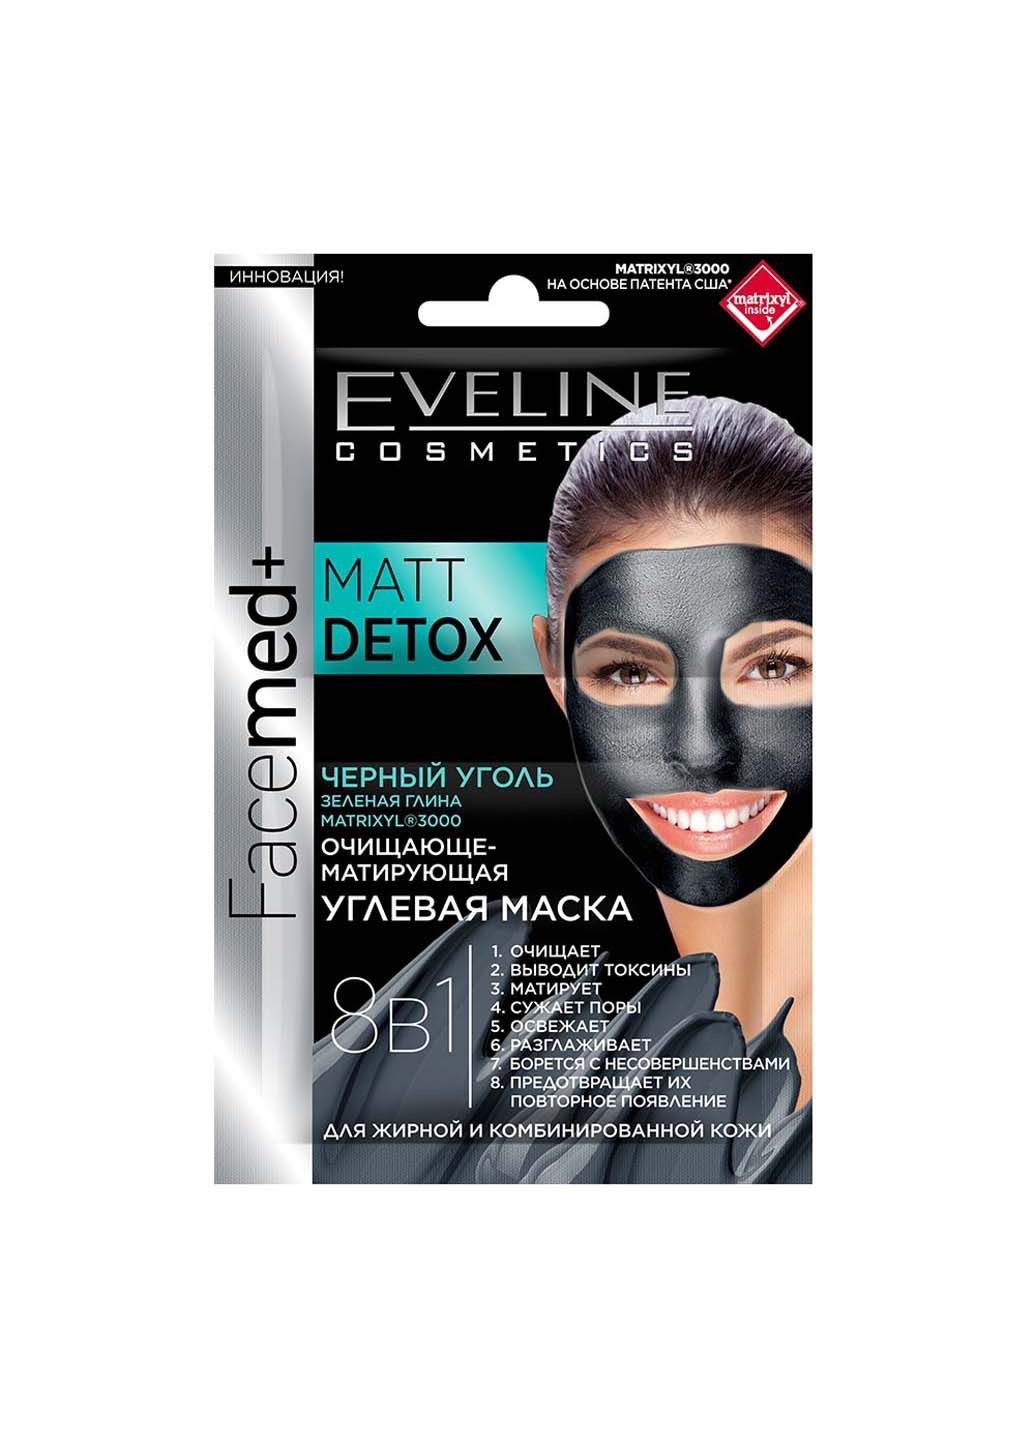 Очищающе-матирующая угольная маска для жирной и комбинированной кожи 8 в 1 10 мл Eveline (280918102)